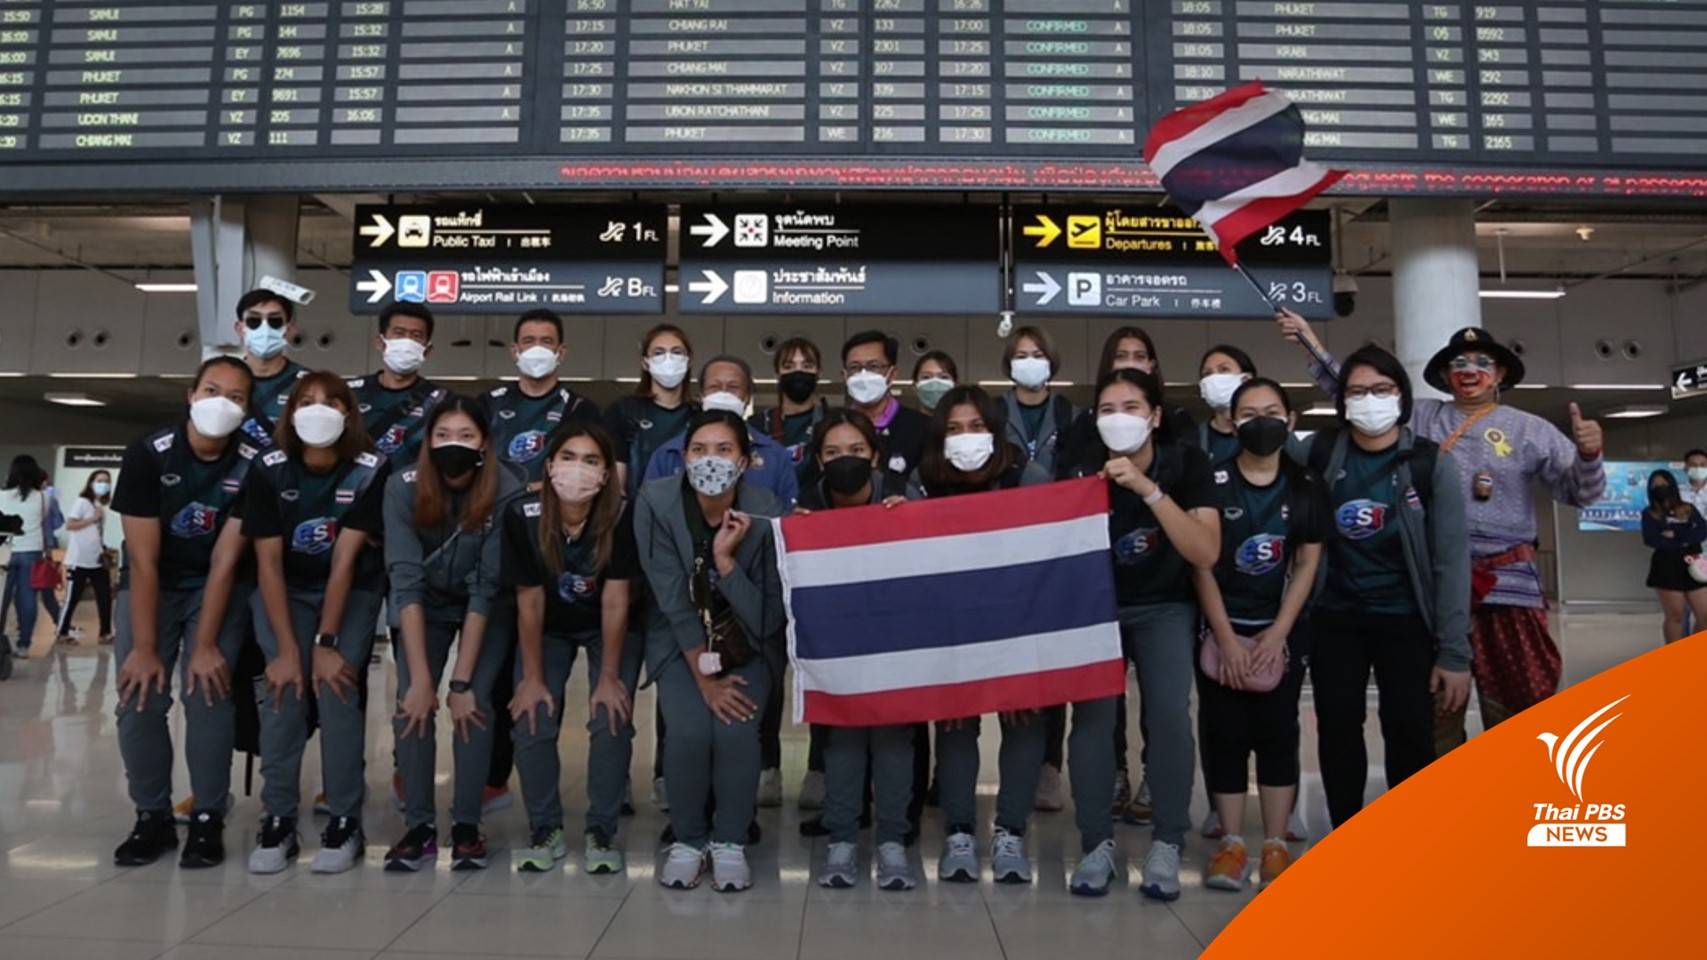 "ทีมลูกยางสาวไทย" กลับถึงบ้าน ก่อนบินสู้ศึกตุรกี 14 ก.ค.นี้  